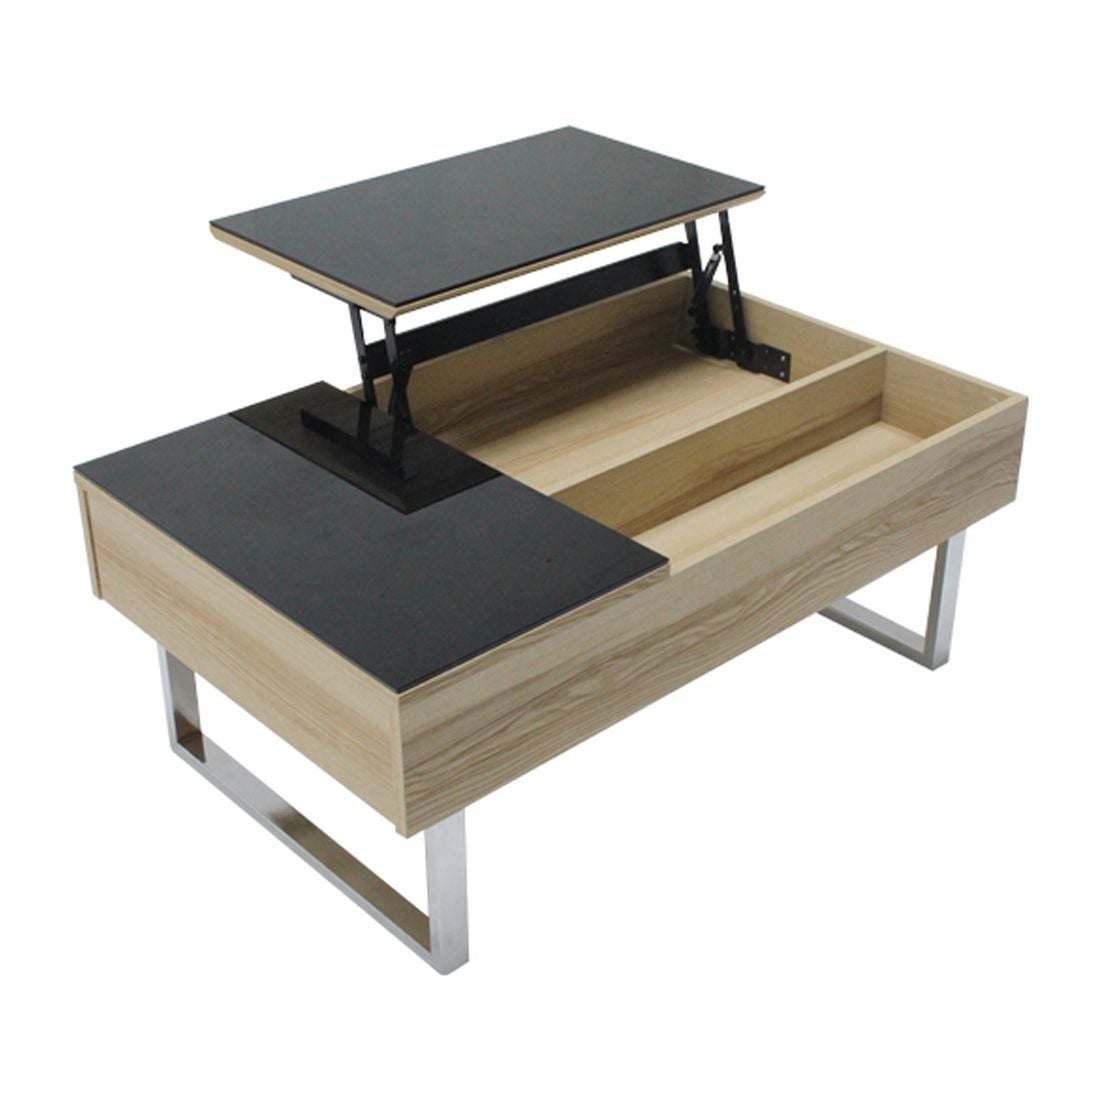 โต๊ะกลาง โต๊ะกลางเหล็กท๊อปกระจก รุ่น Acadia-SB Design Square